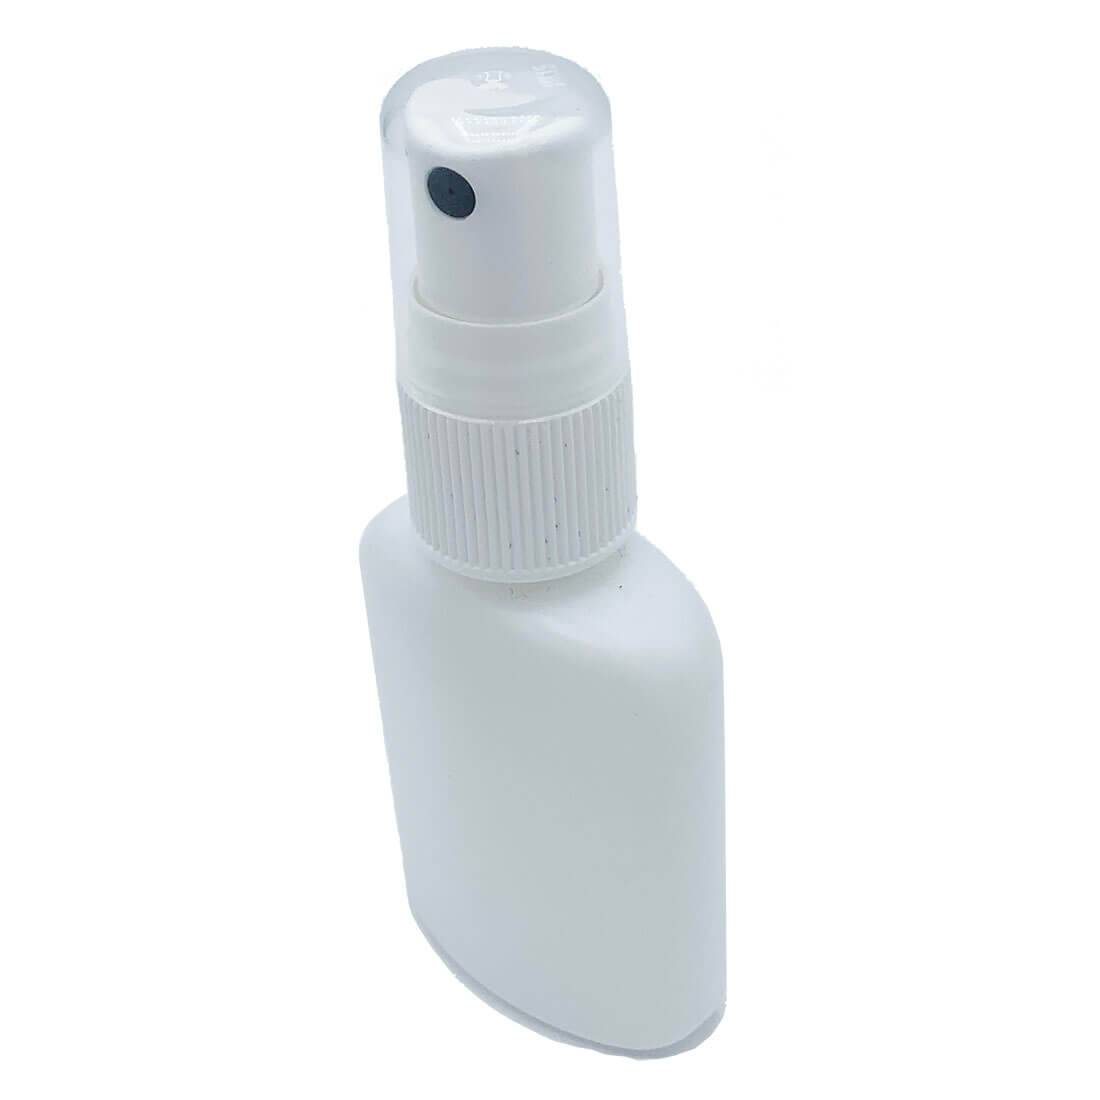 30ml High Density Plastic Weapon Cleaning Kit Oil Bottle - John Bull Clothing